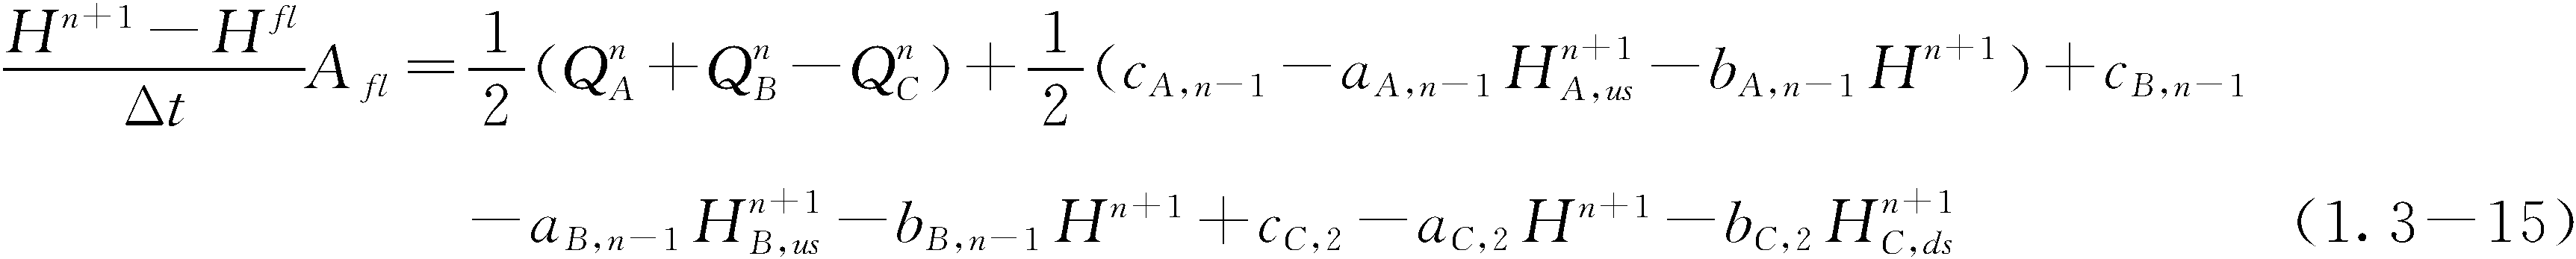 1.3.3 离散方程组求解